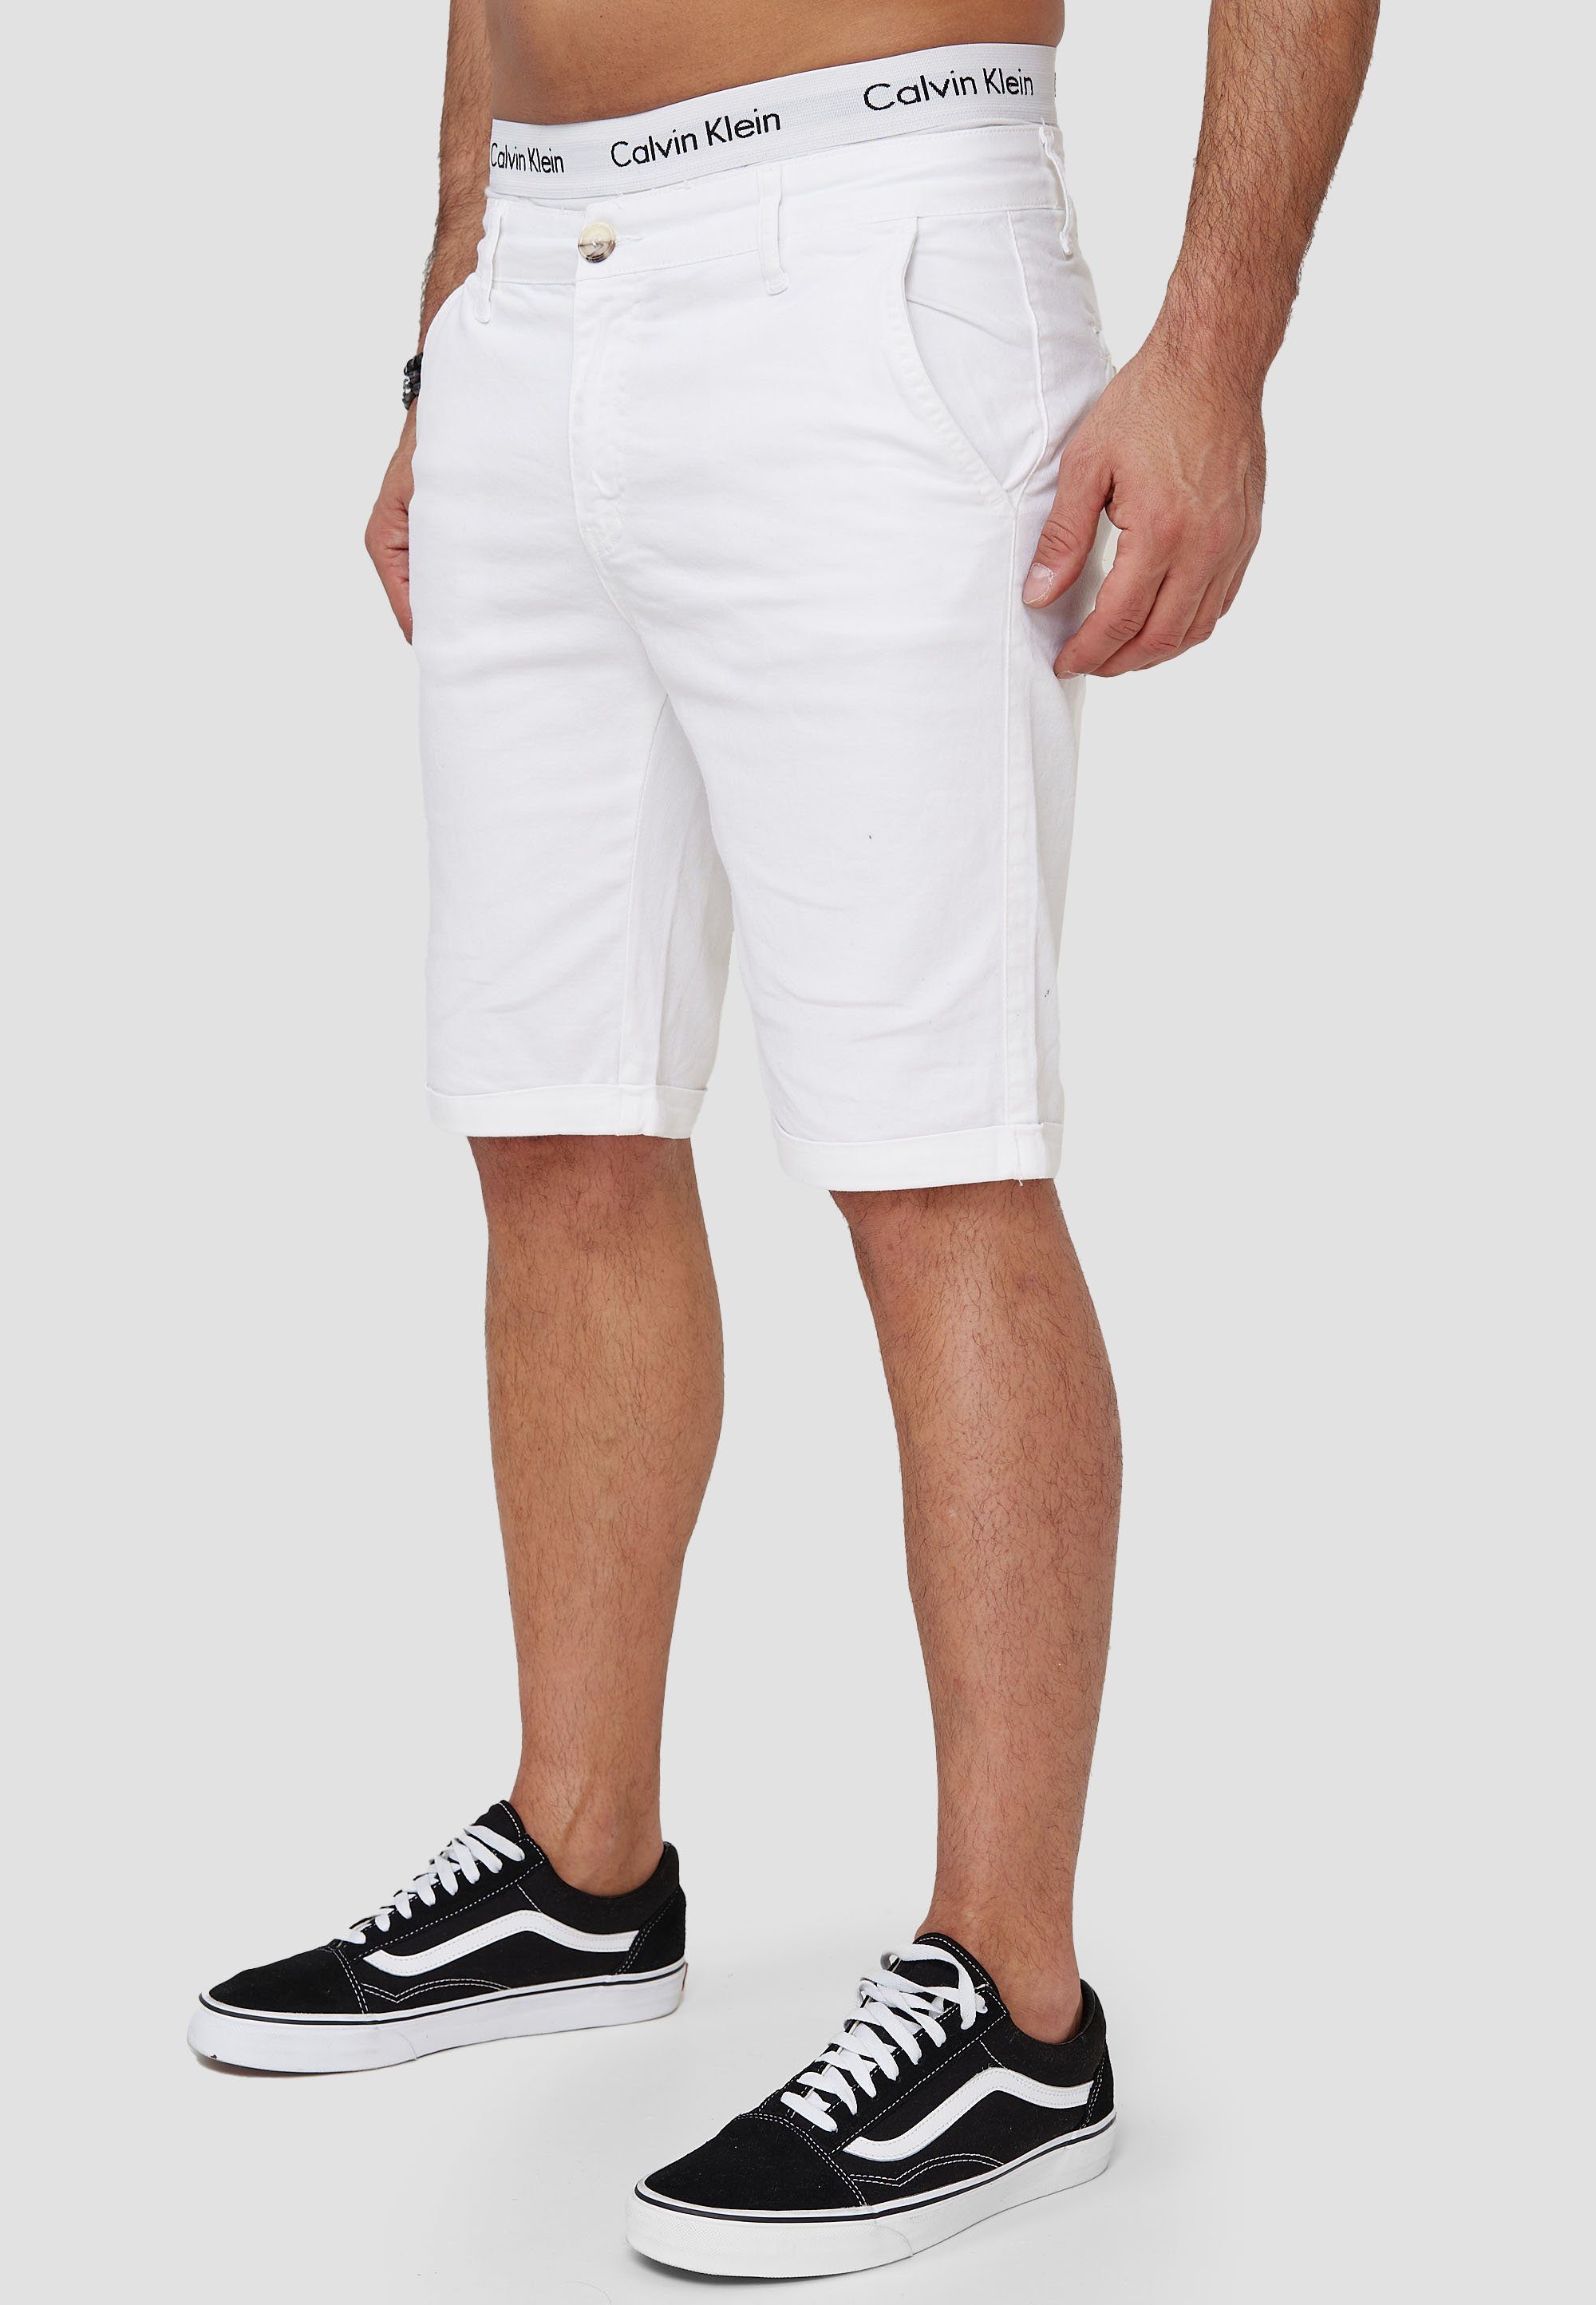 OneRedox Shorts SH-3364 Hose Bermudas (Kurze Casual 1-tlg., im modischem Design) Freizeit Sweatpants, Weiß Fitness